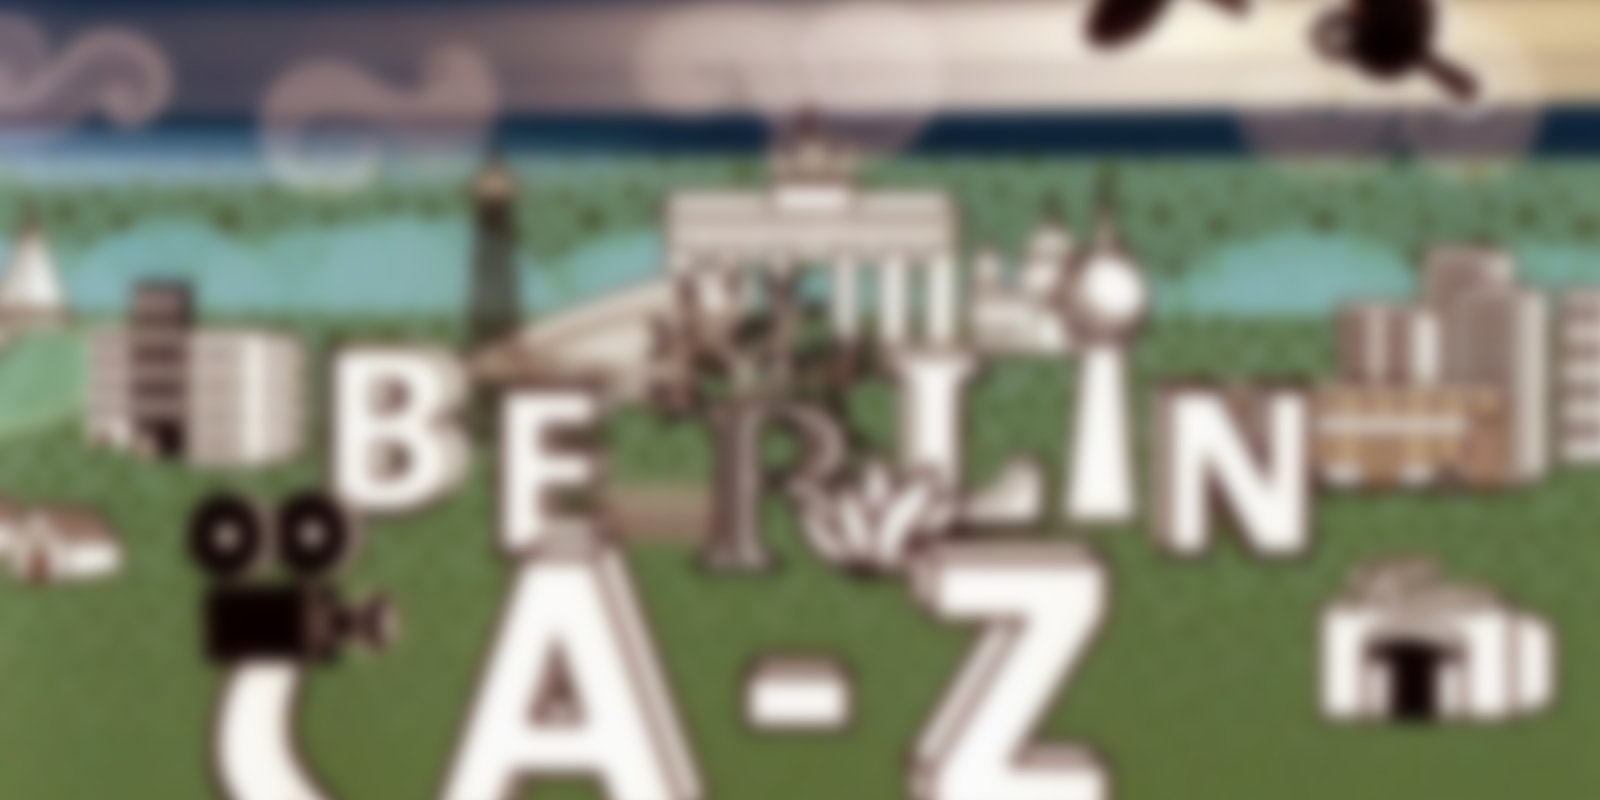 Berlin von A - Z